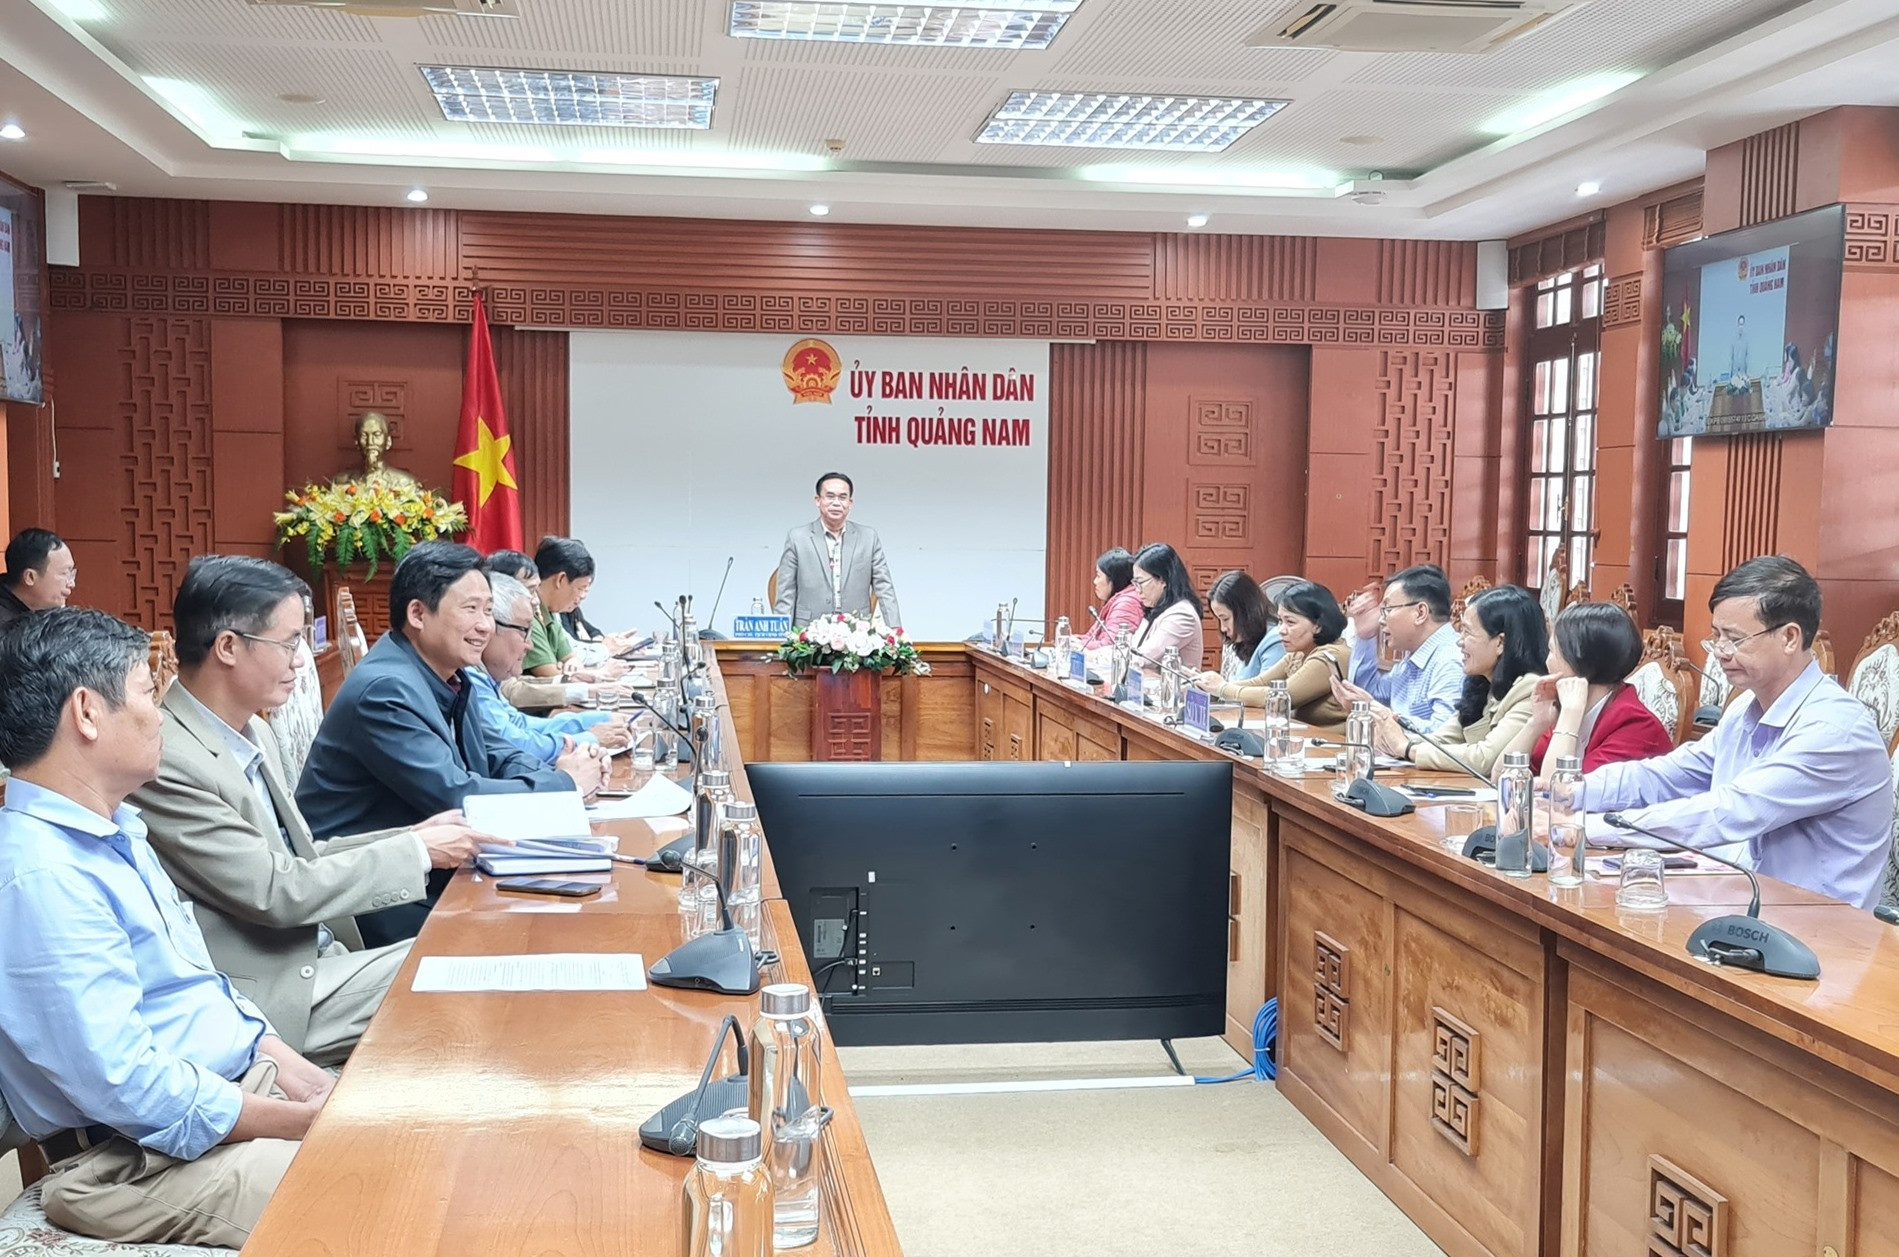 Phó Chủ tịch UBND tỉnh Trần Anh Tuấn phát biểu tại cuộc họp trực tuyến toàn tỉnh về chăm lo tết. Ảnh: D.L